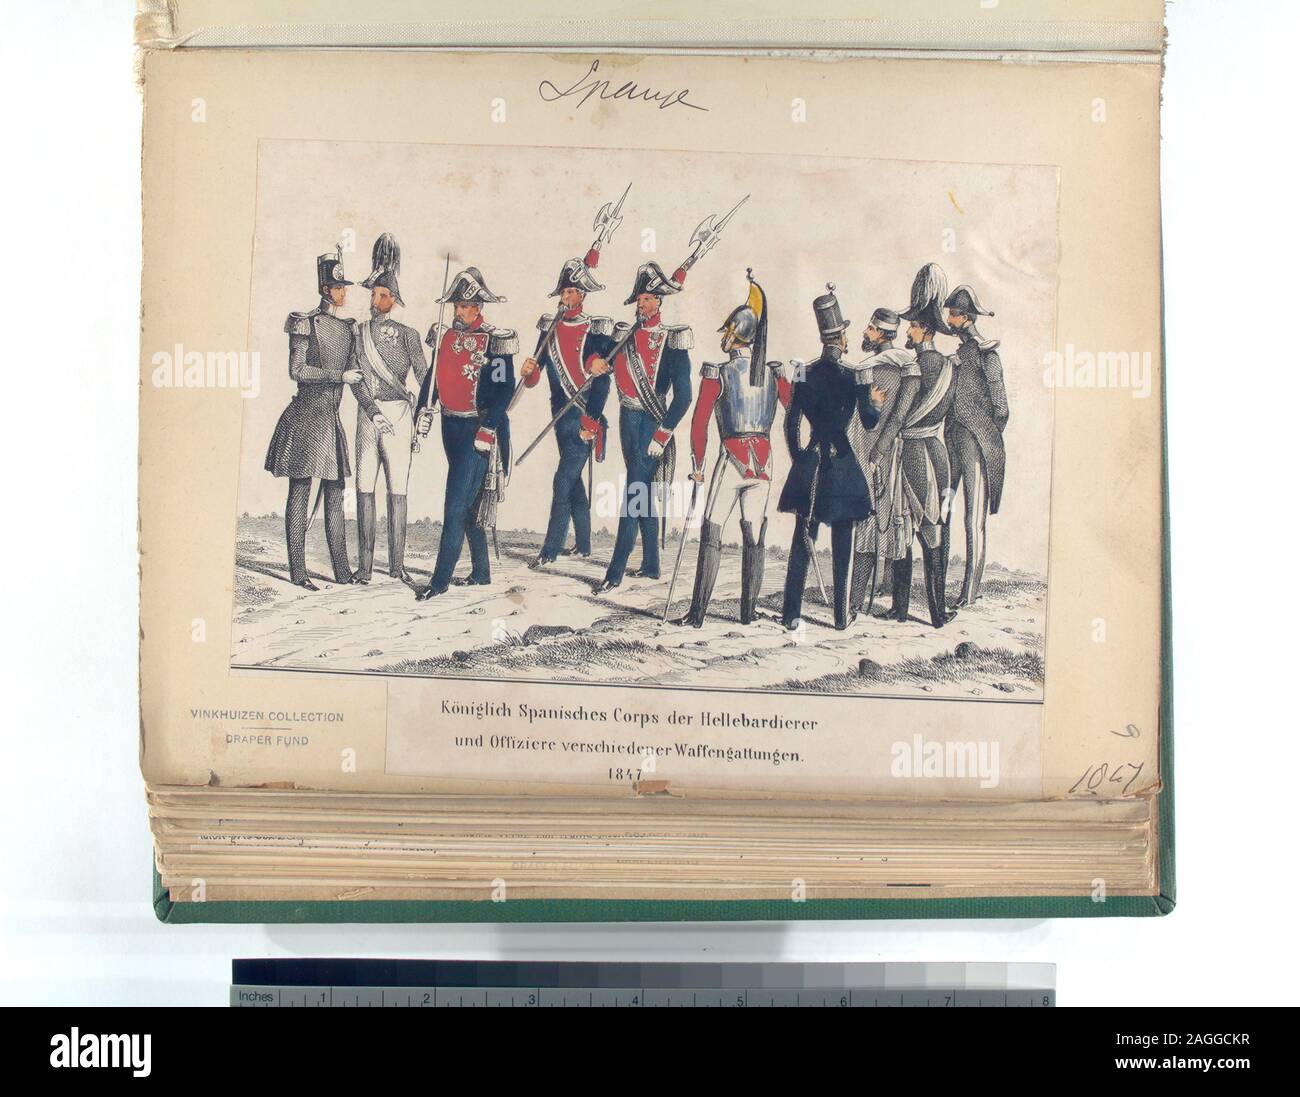 Draper Fund; Königlich Spanisches Corps der Hellebardierer und Offiziere verschiedener Waffengattungen. 1847 Stock Photo